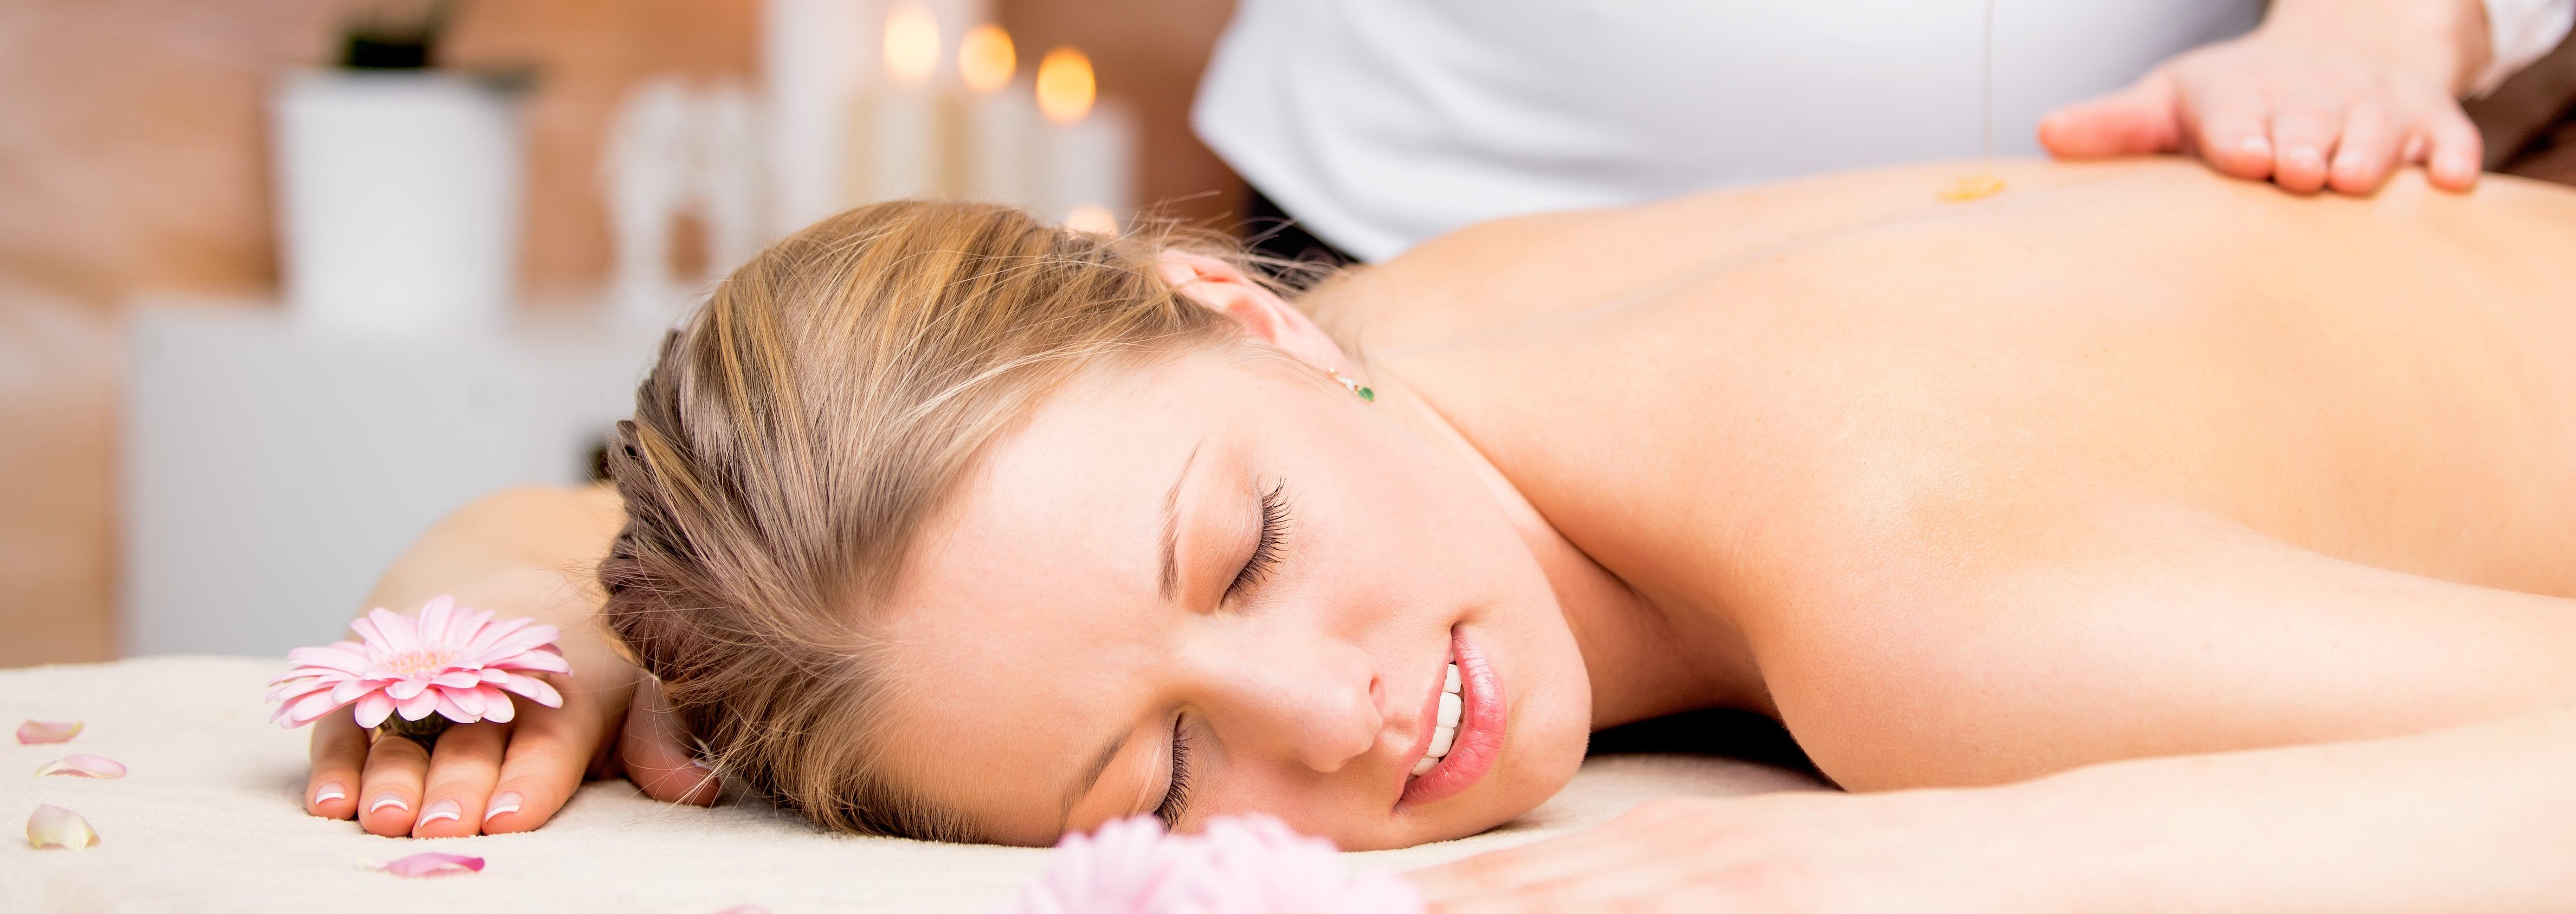 Massage 8. Релакс массаж. Ароматерапия аромамассаж. Спа программы с эфирными маслами. Массаж с аромамаслом.